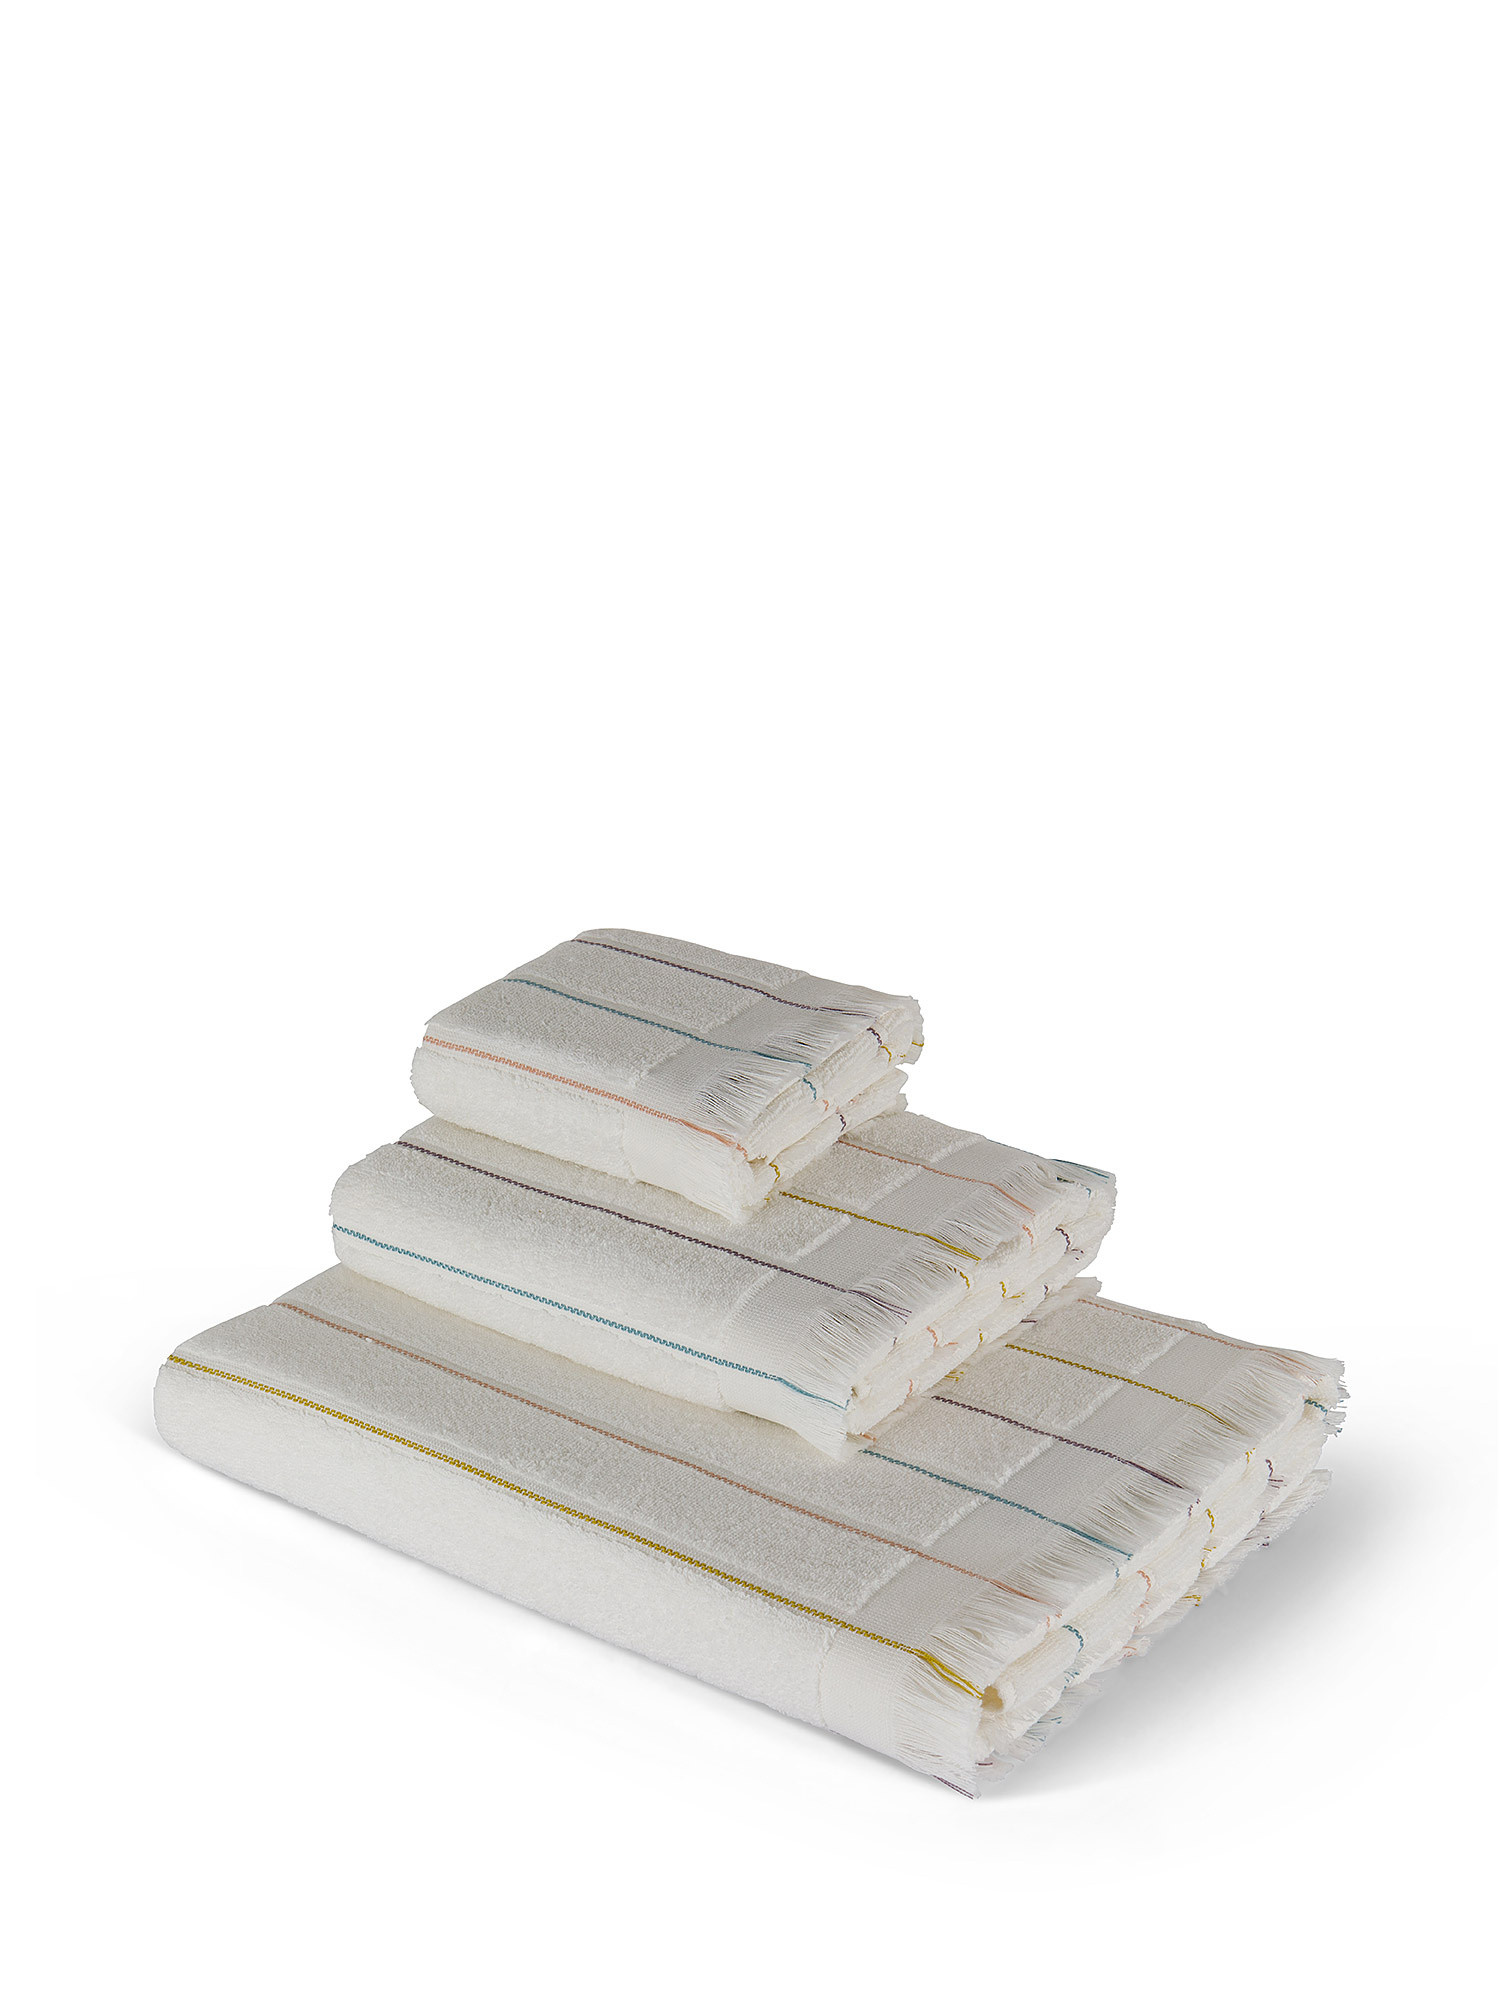 Asciugamano spugna di cotone con impunture, Bianco, large